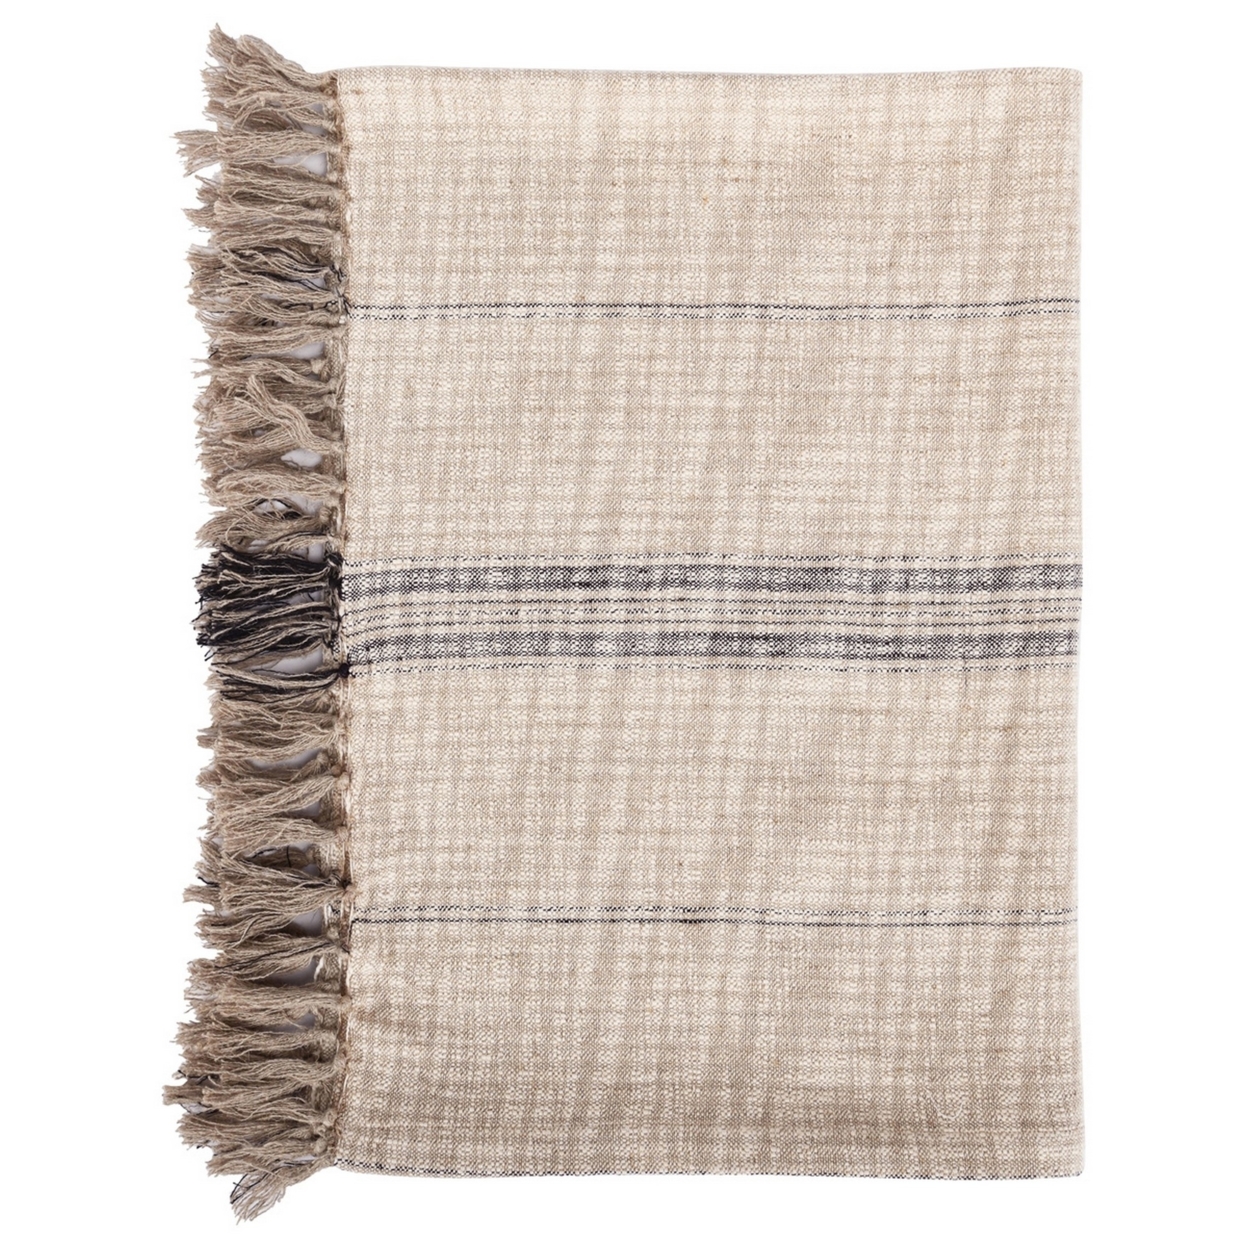 Uno 50 Inch Throw Blanket, Soft Cotton, Linen, Woven Stripes, Beige, Brown- Saltoro Sherpi